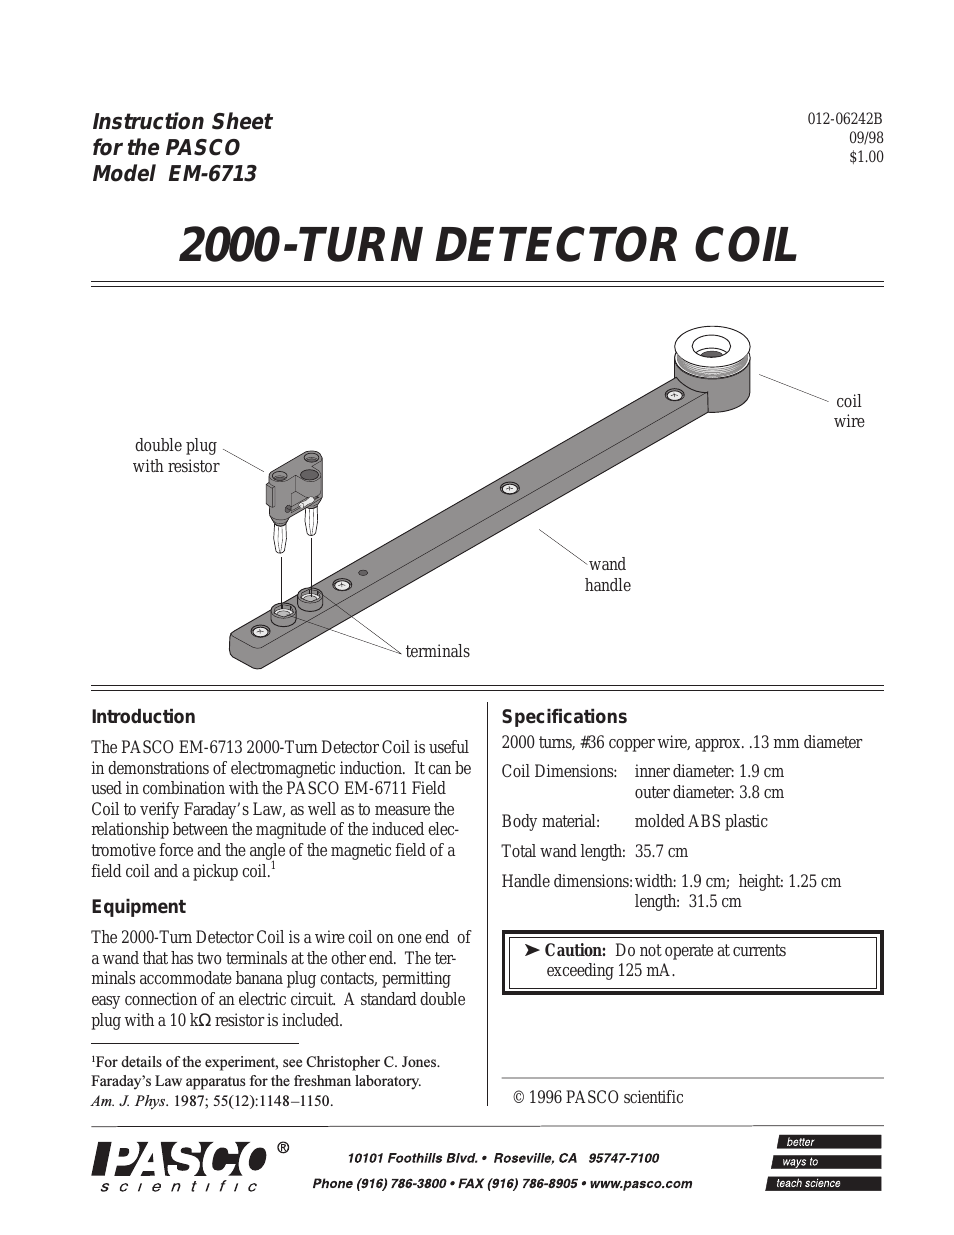 EM-6713 2000-TURN DETECTOR COIL